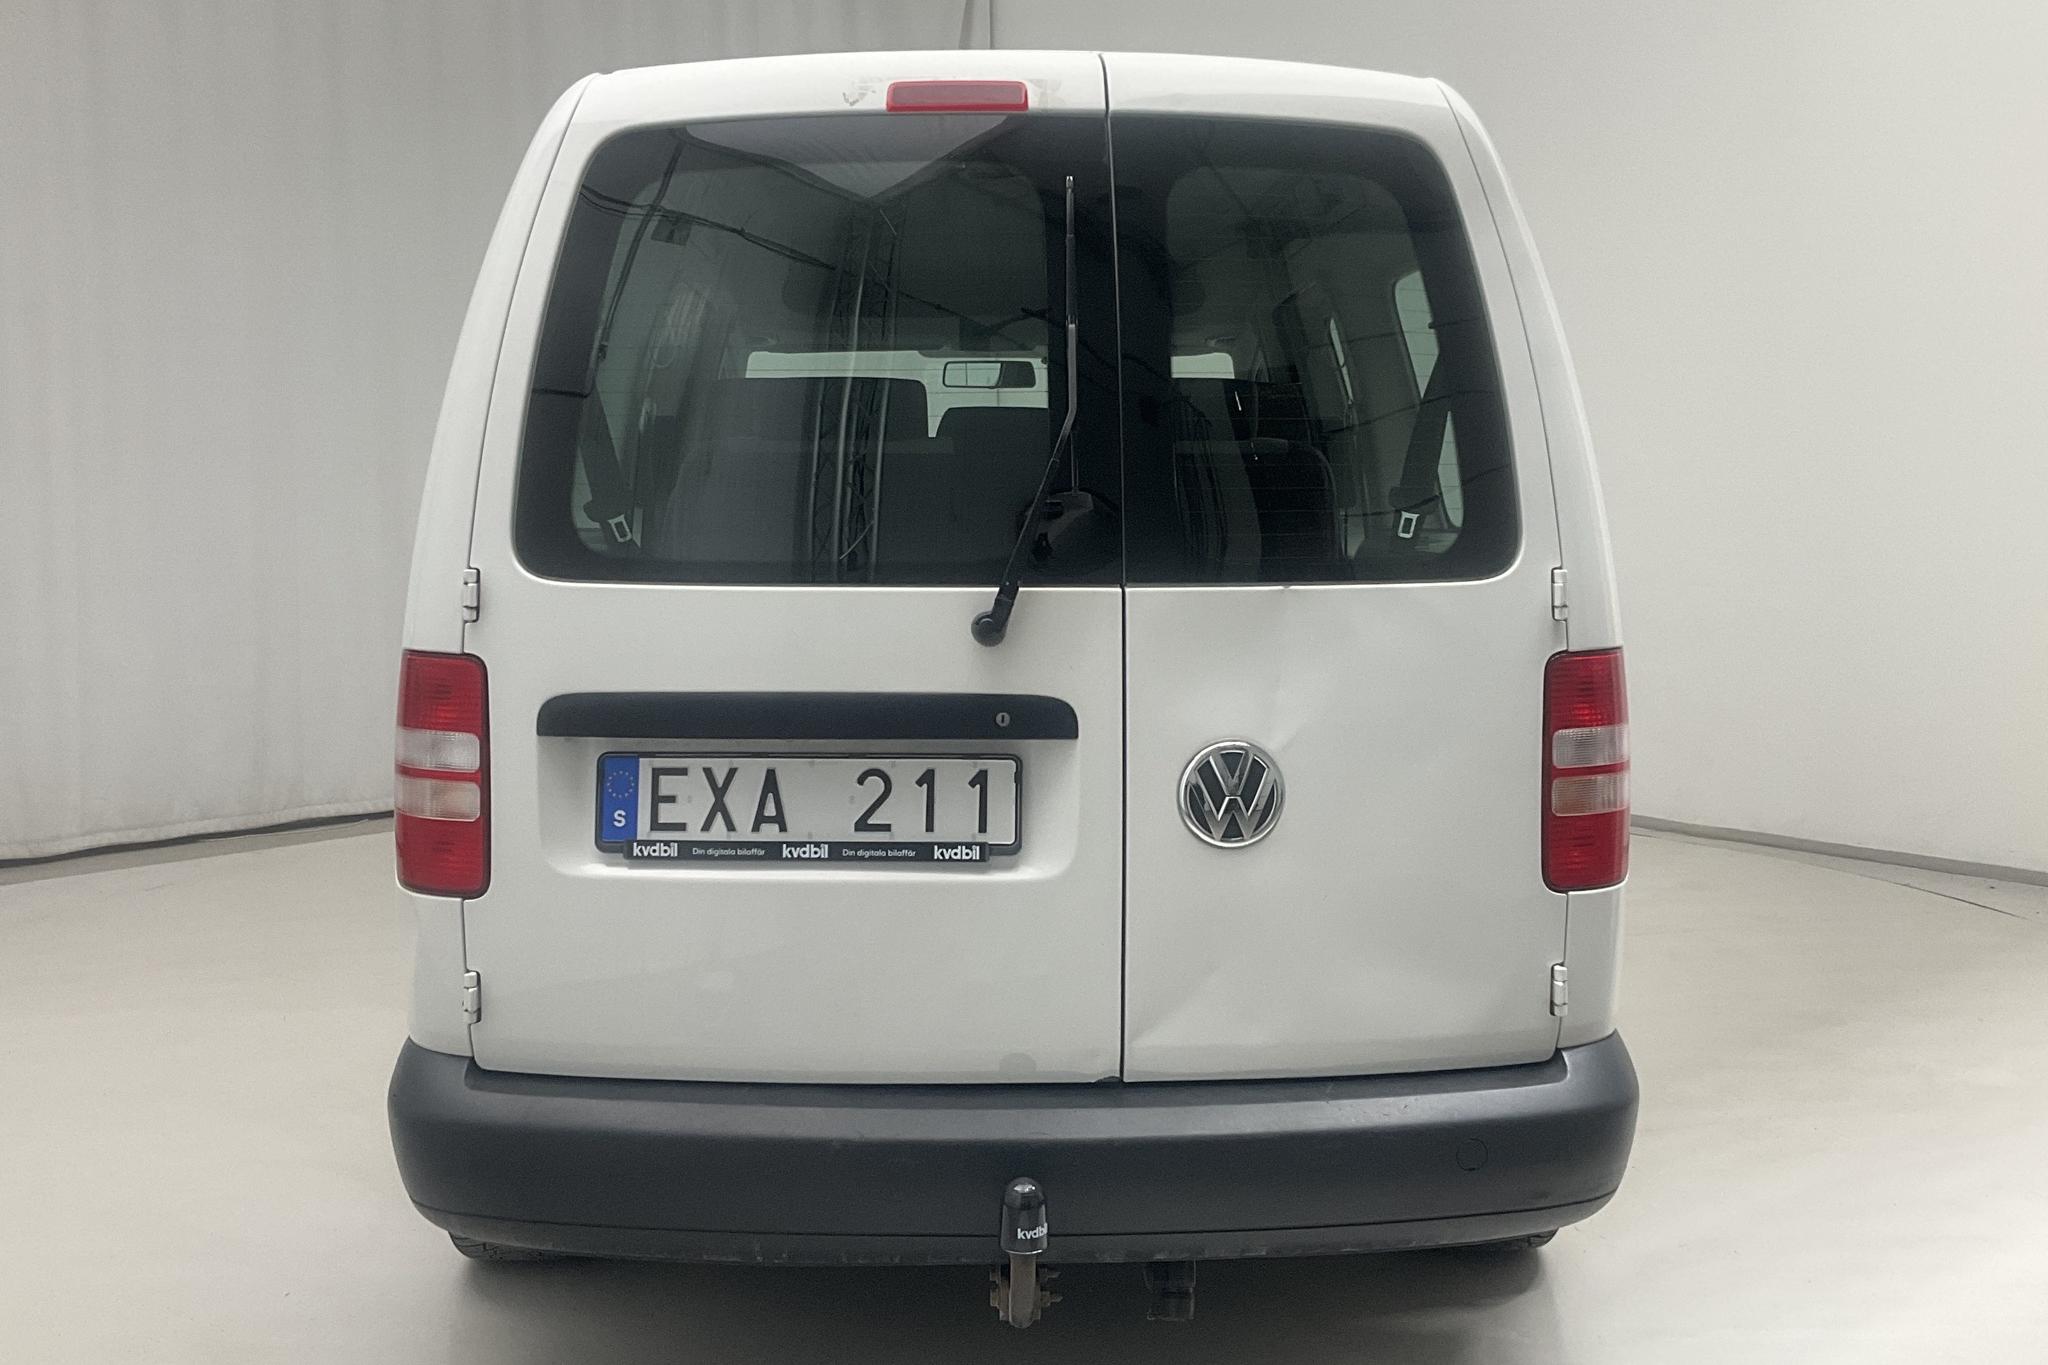 VW Caddy MPV Maxi 1.6 TDI (102hk) - 130 950 km - Manual - white - 2013